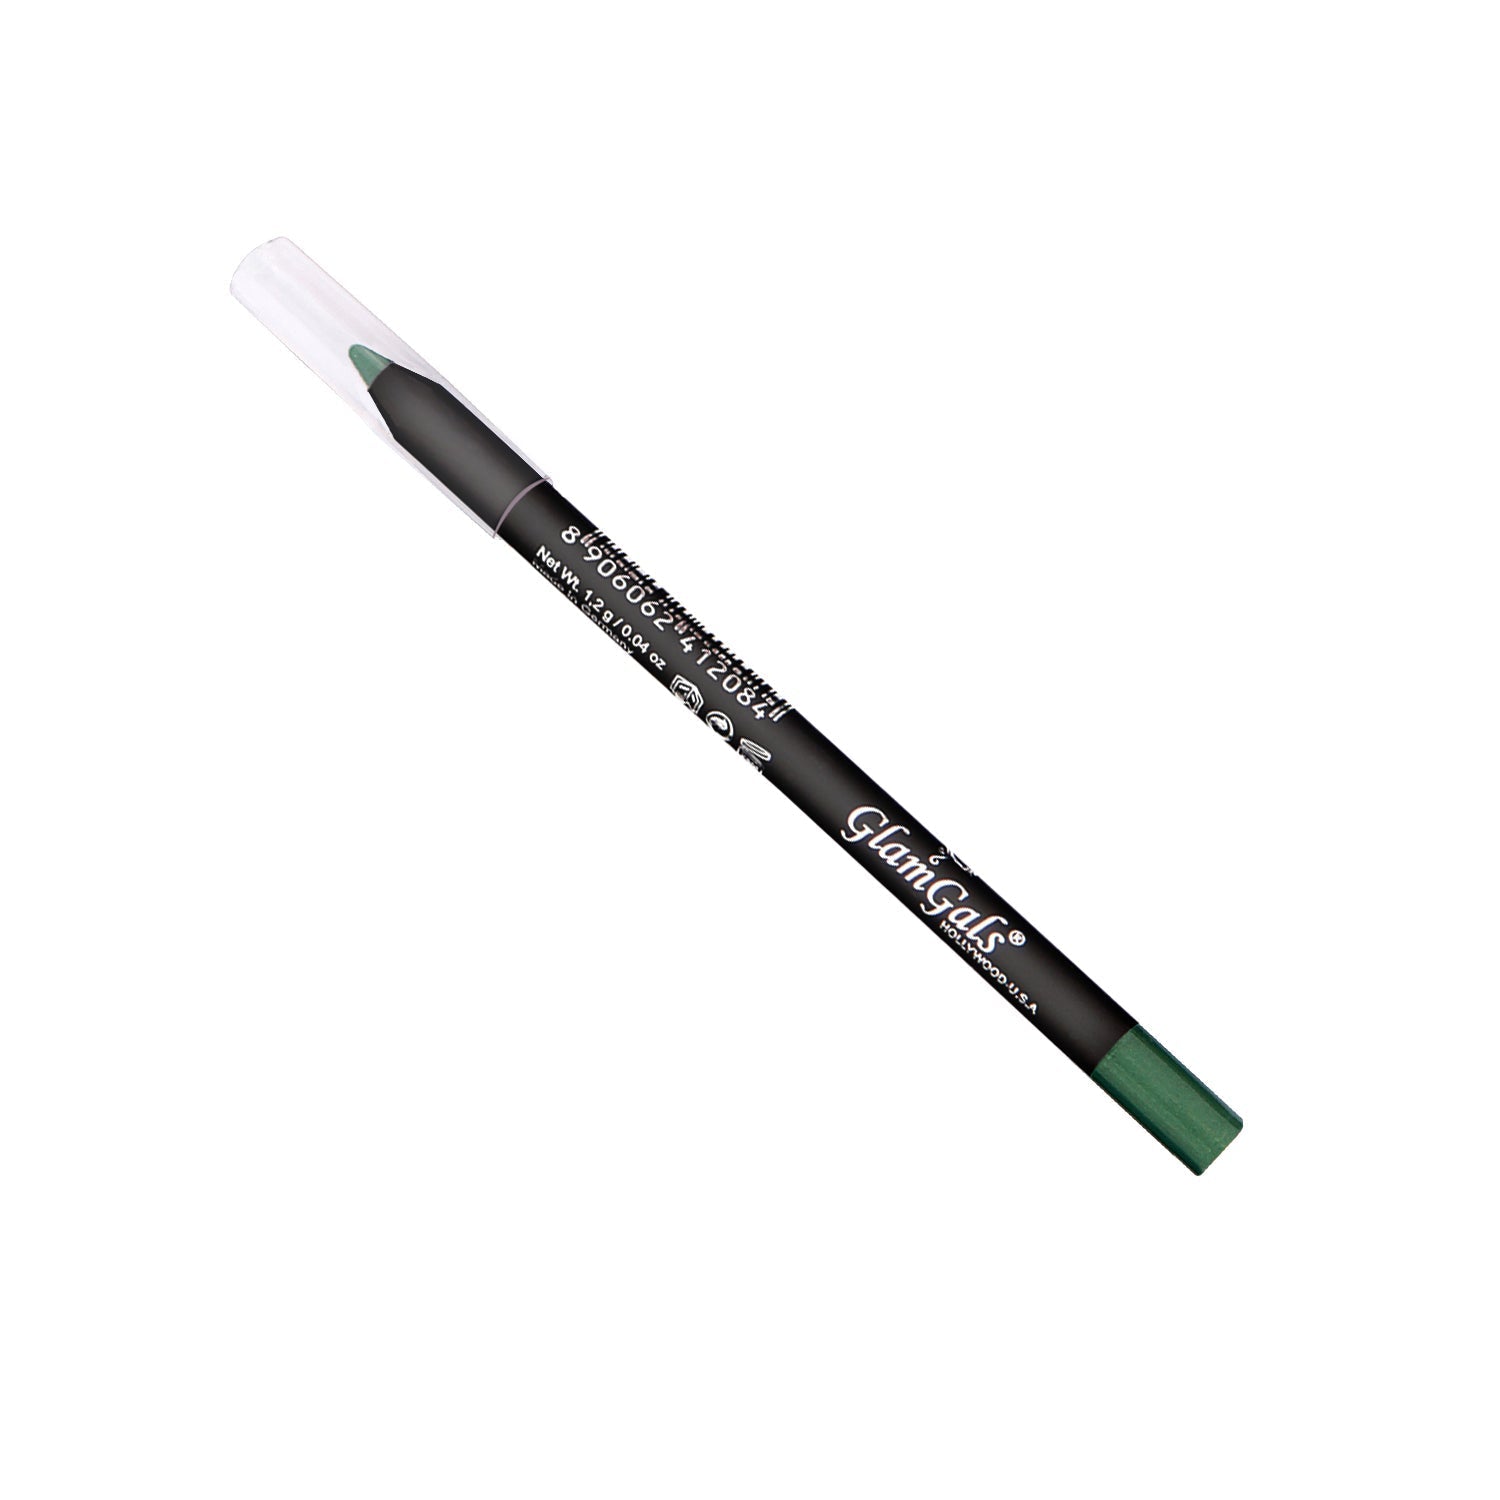 Glamgals Hollywood-U.S.A Glide-On Eye Pencil, Green - BUDNE